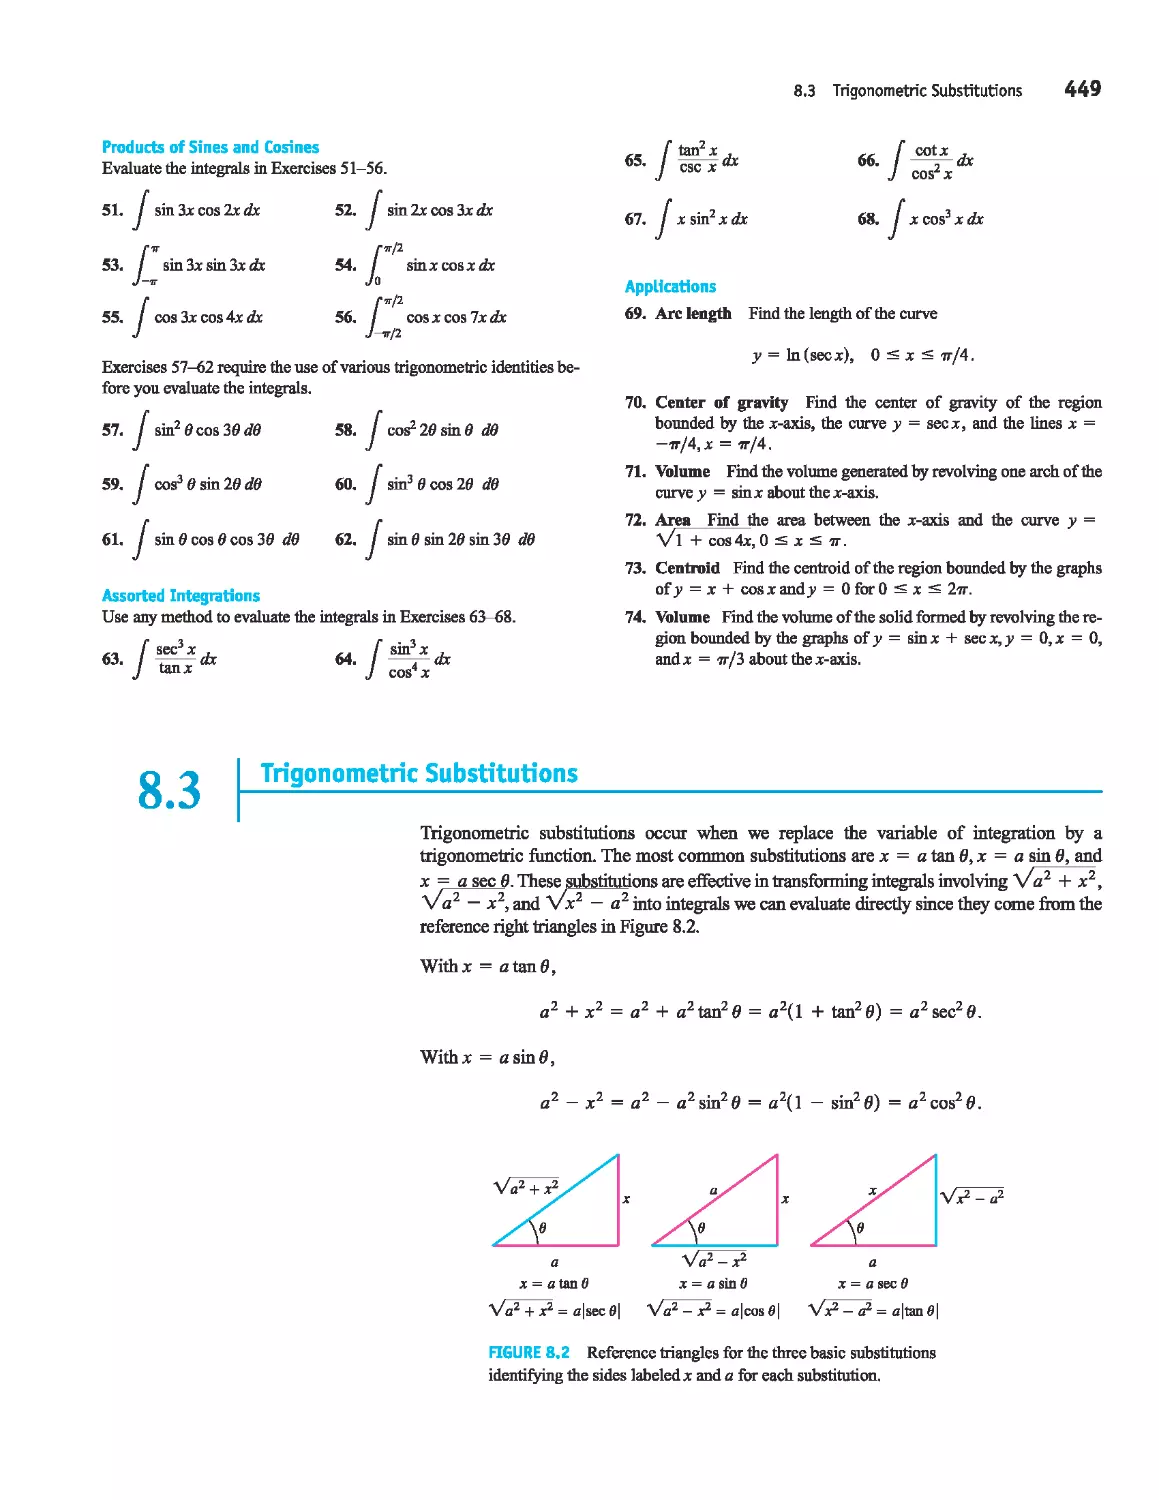 8.3 - 
Trigonometric Substitutions